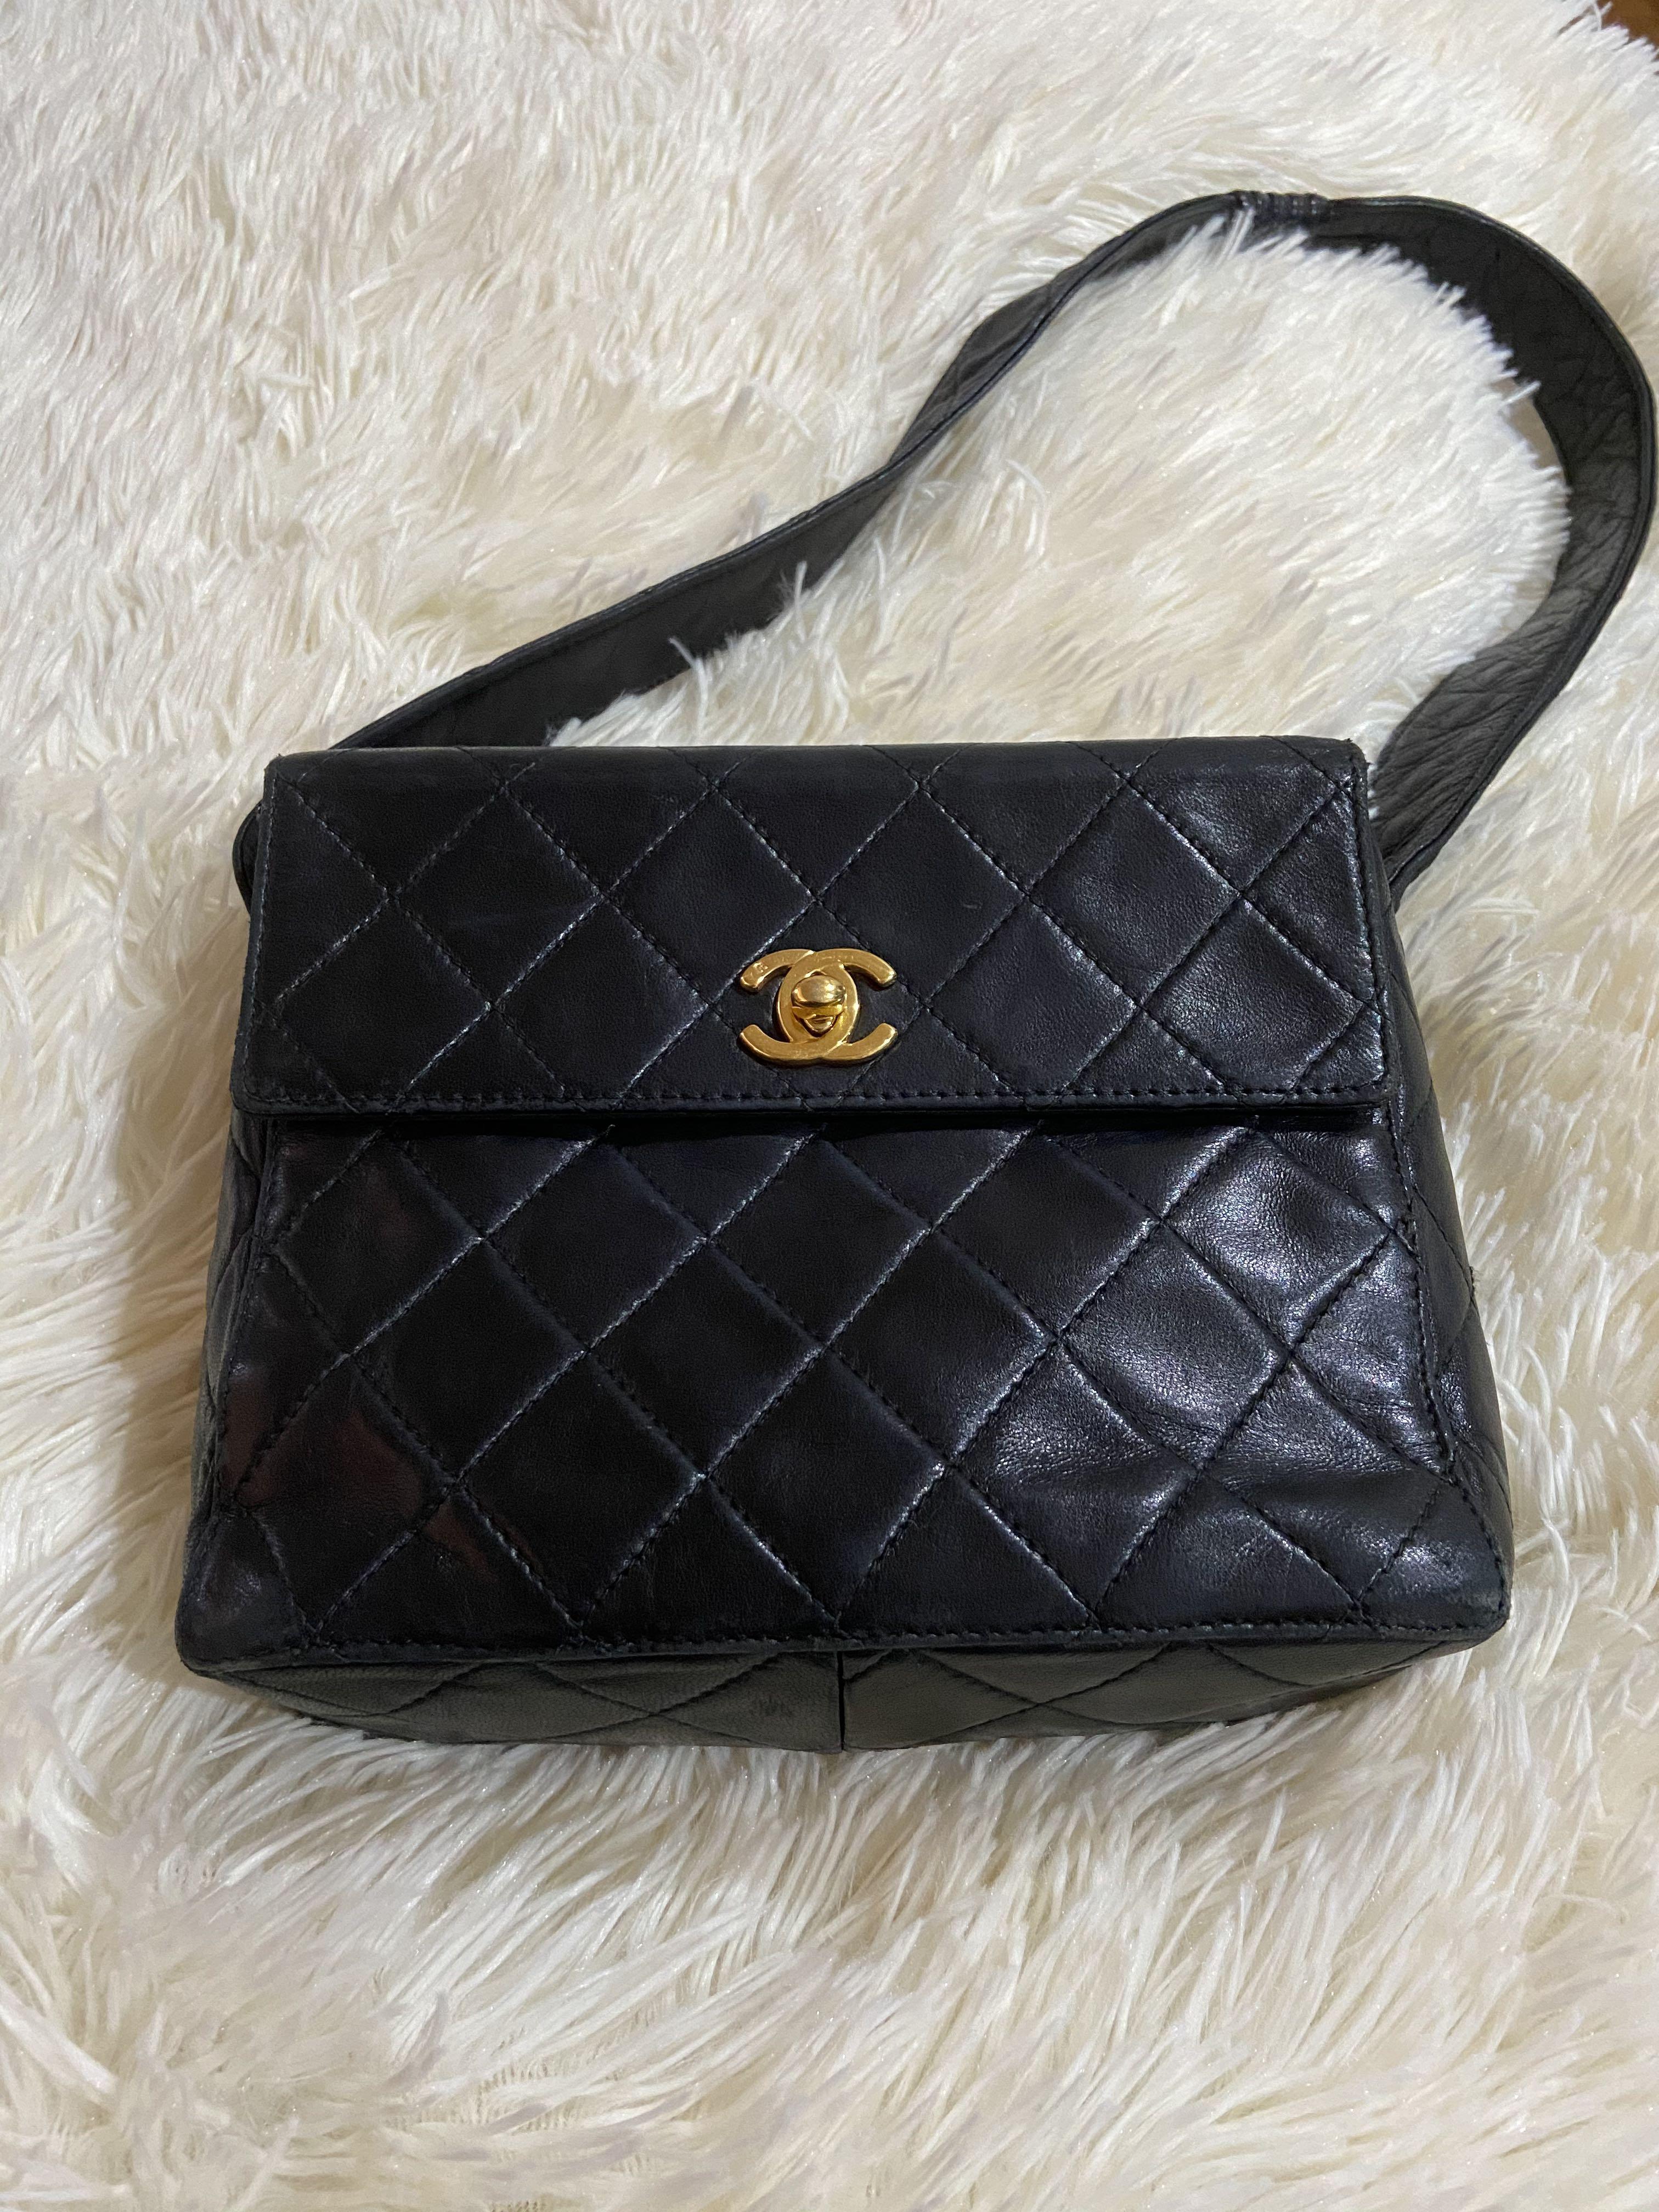 Chanel vintage messenger bag